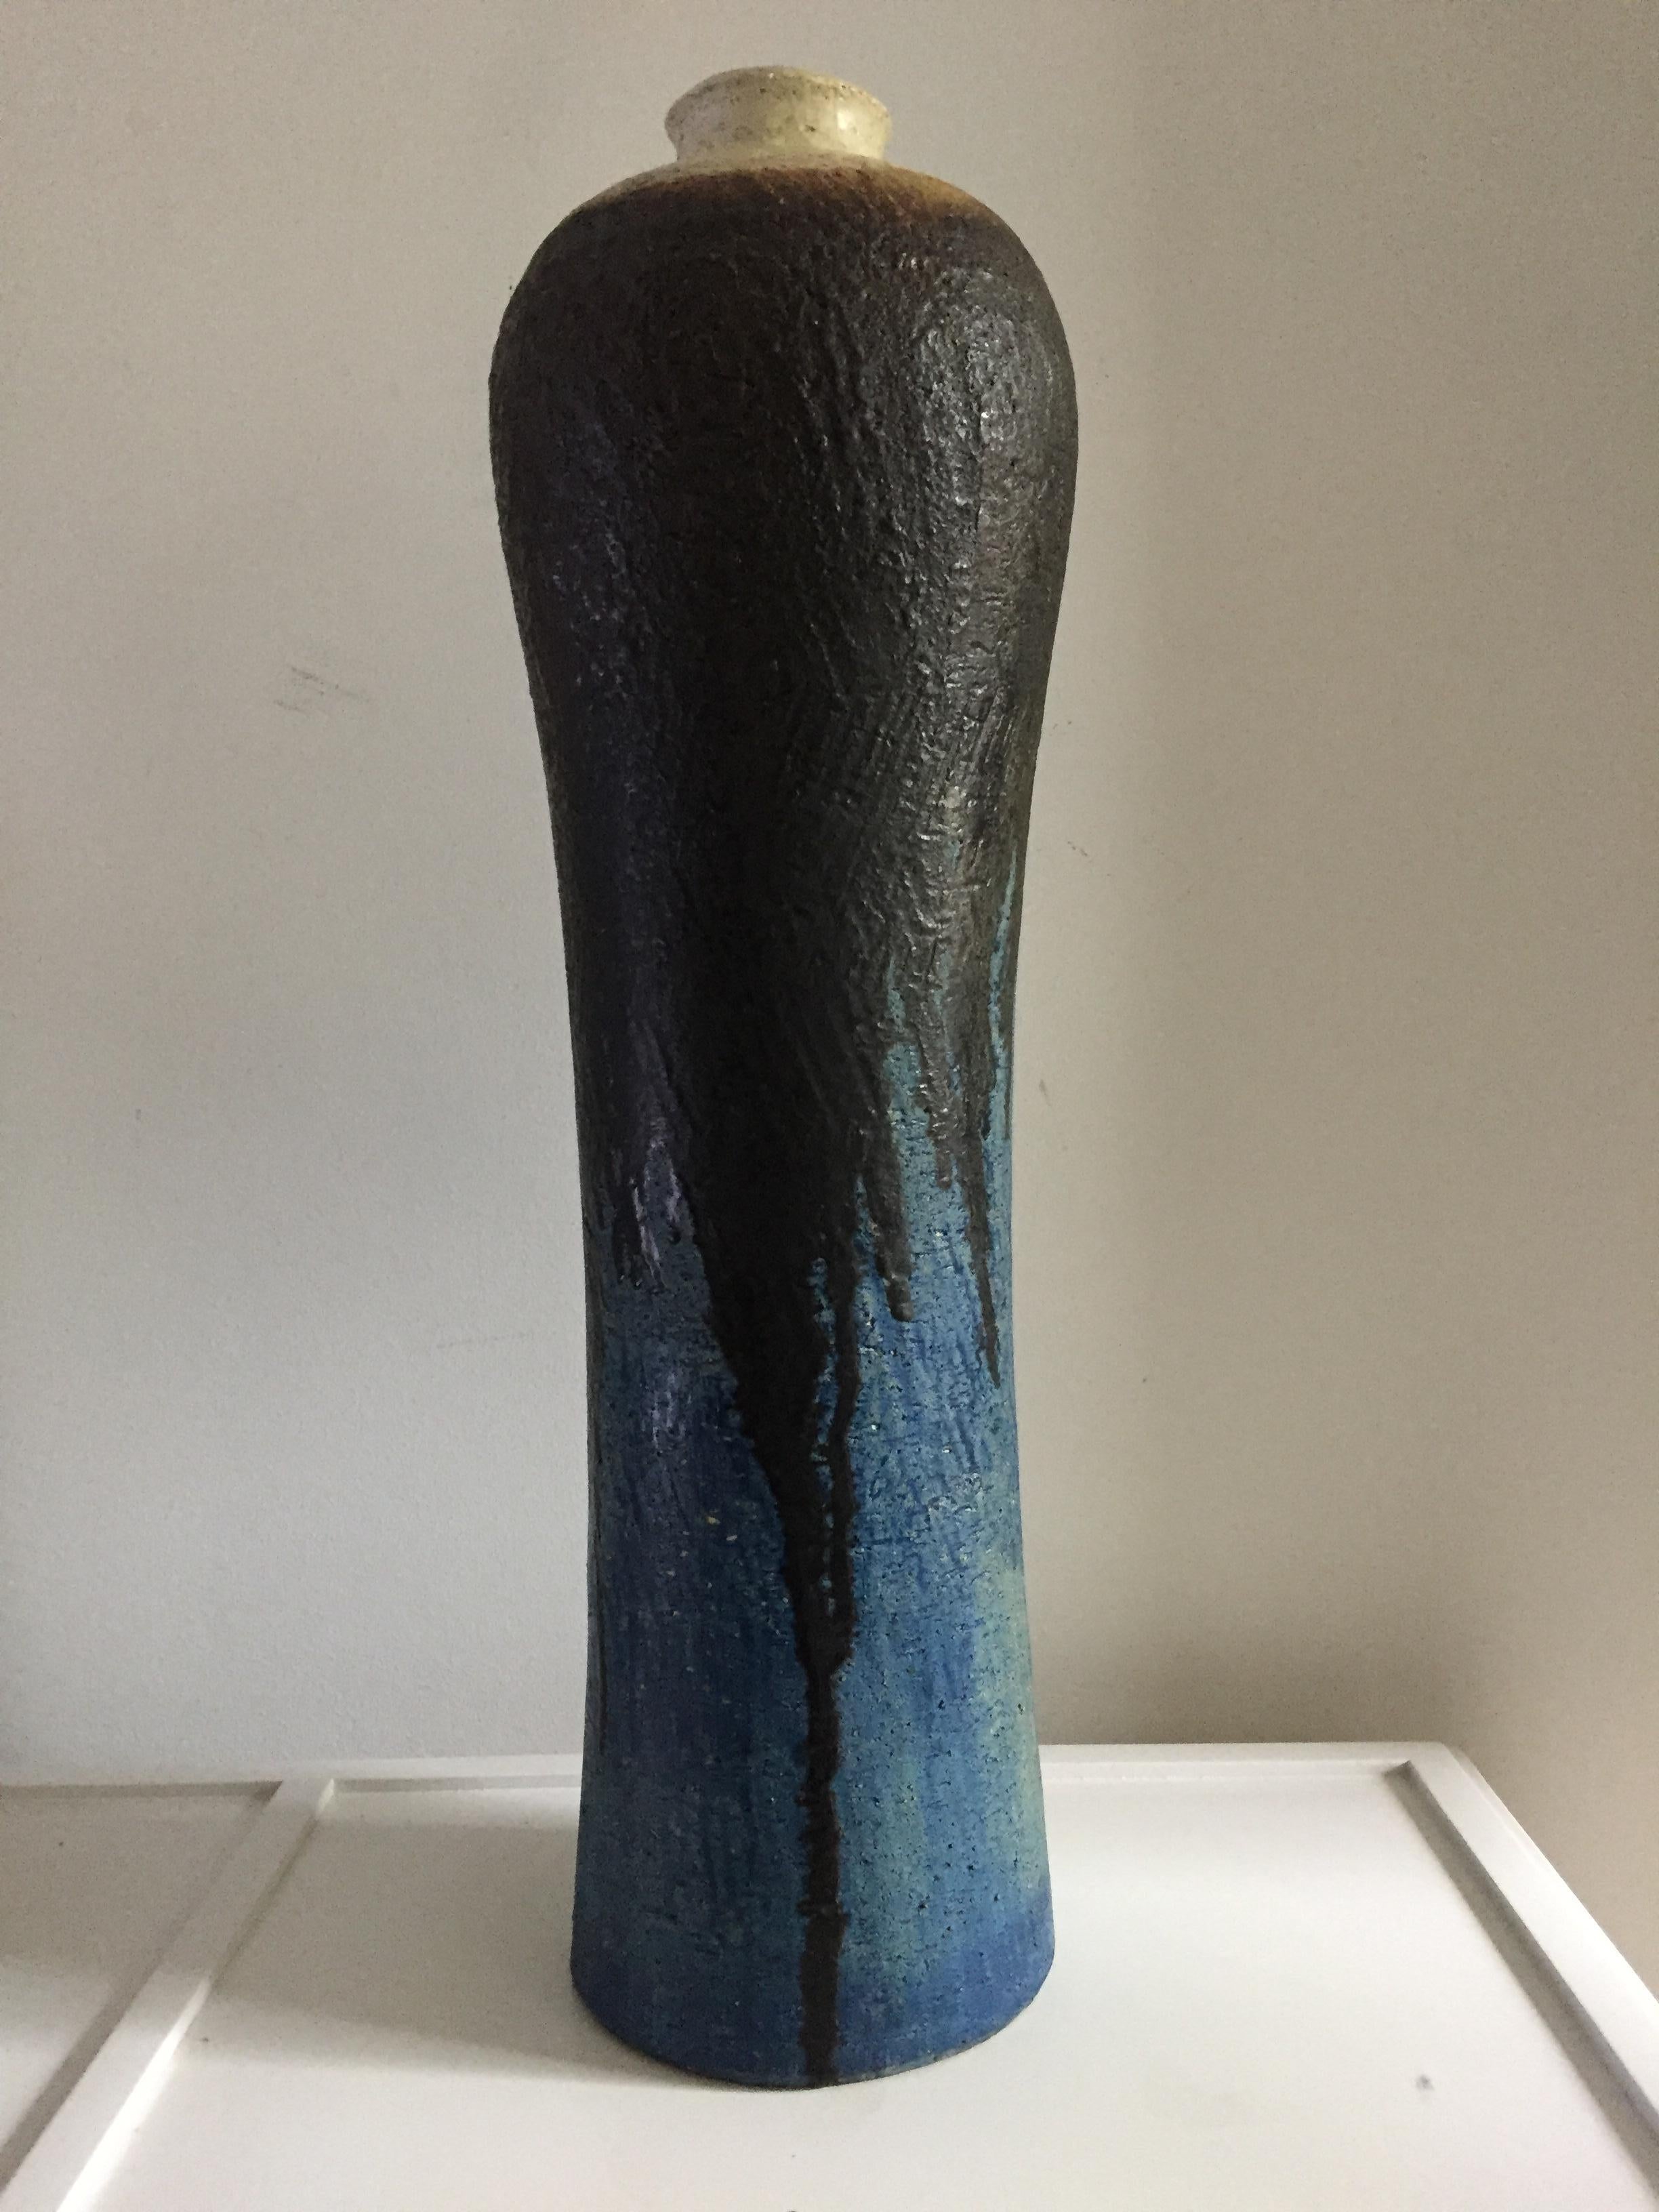 Monumentale Keramikvase von Marcello Fantoni, signiert und nummeriert für Raymor, hoch und geriffelt an der cremefarbenen Spitze mit schwarzer Glasur, die über blaue und türkise Farbtöne und Texturen tropft.